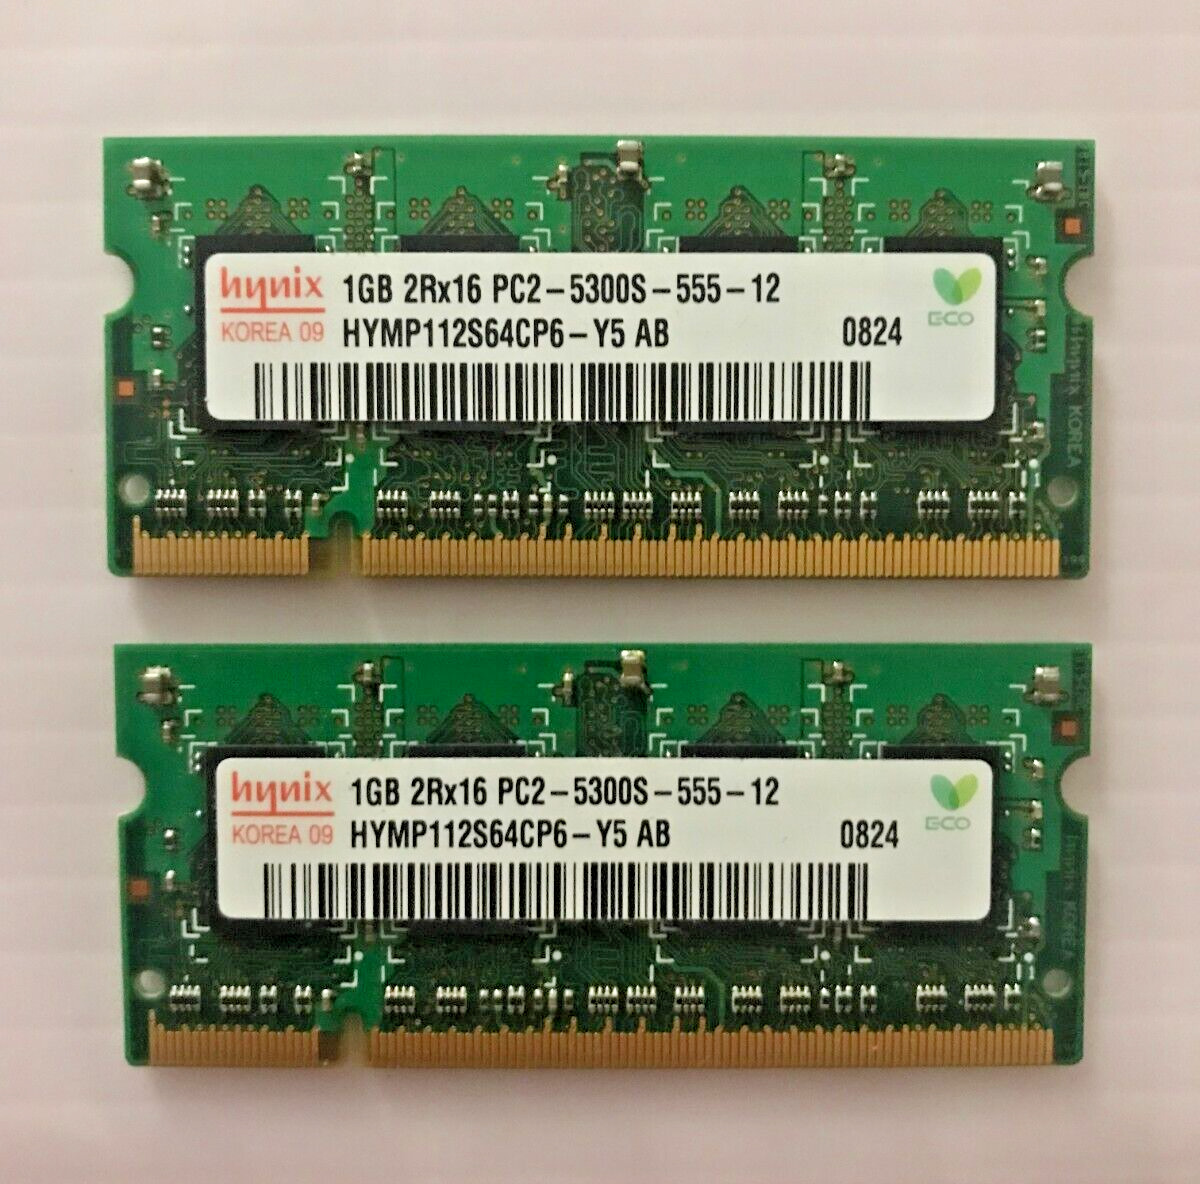 (LOT X2) Hynix 1GB SODIMM 2Rx16 PC2-5300S HYMP112S64CP6-Y5 AB Laptop Memory RAM